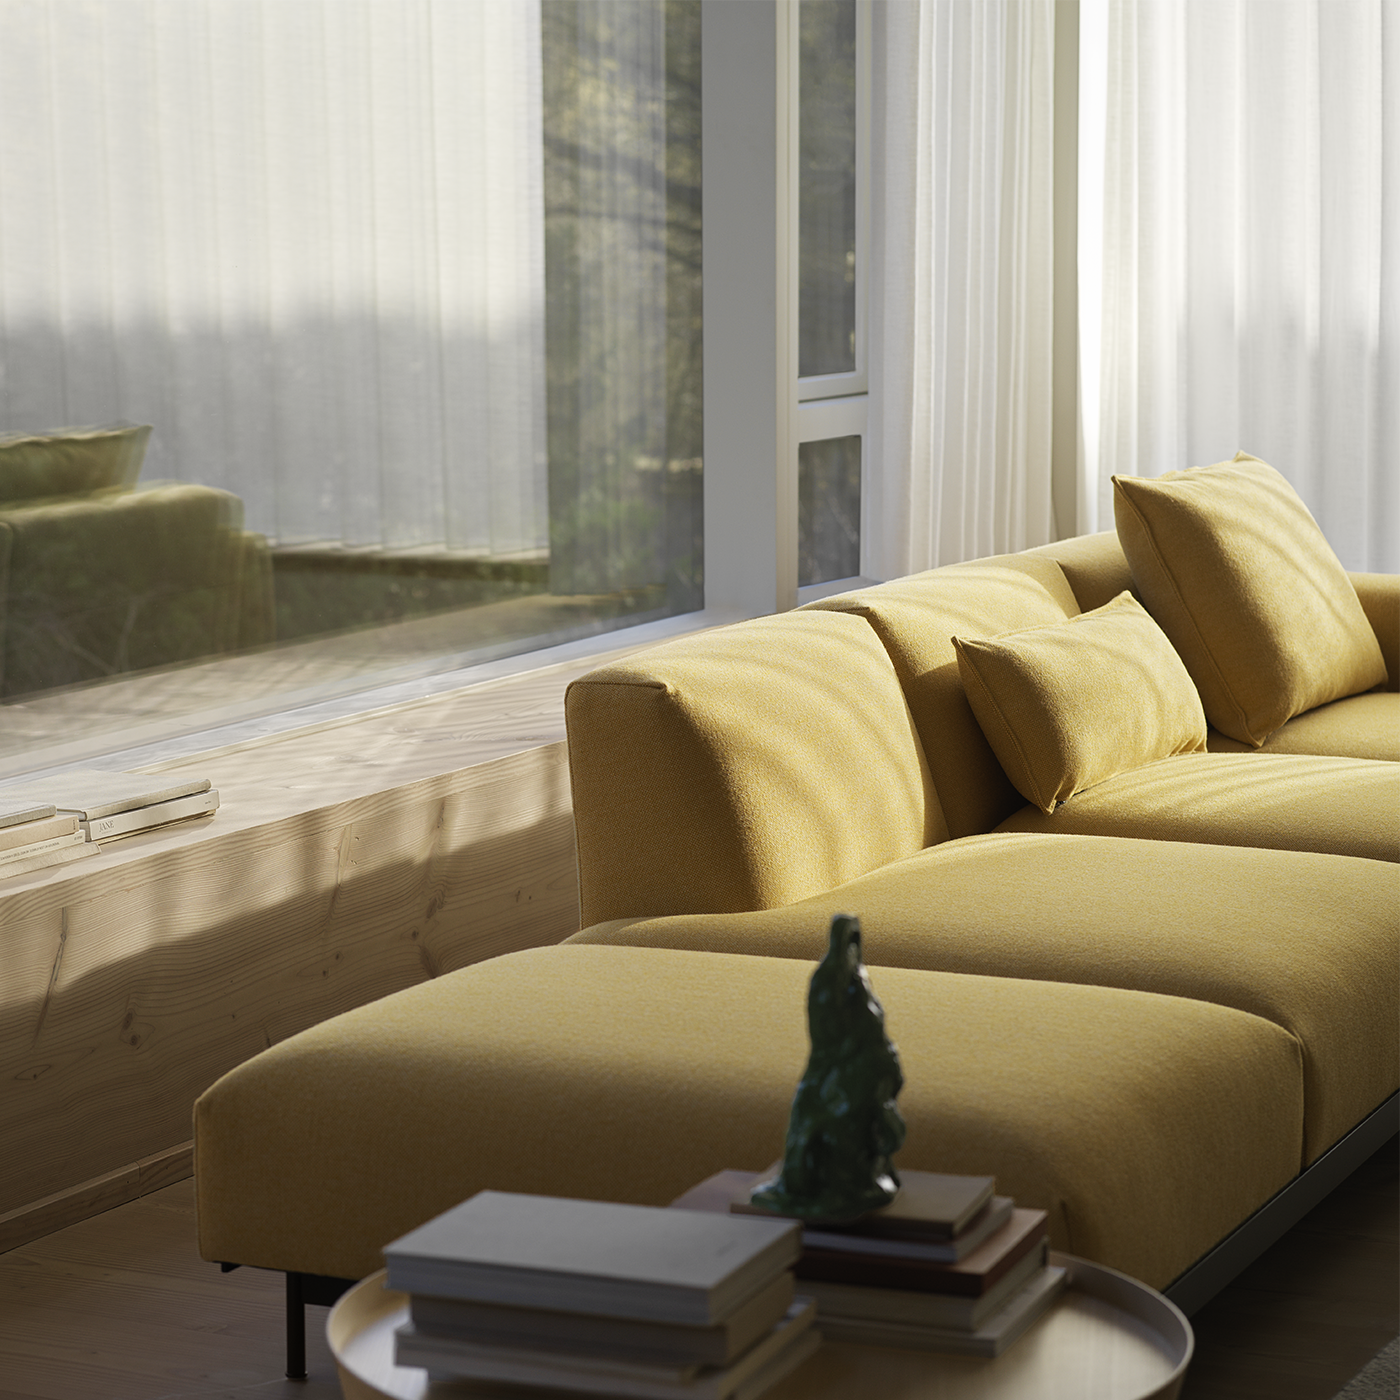 Das Wohnzimmer ist mit einem gelben Sofa eingerichtet. Die Sonne scheint durch das Fenster und verleiht dem Raum natürliches Licht. 